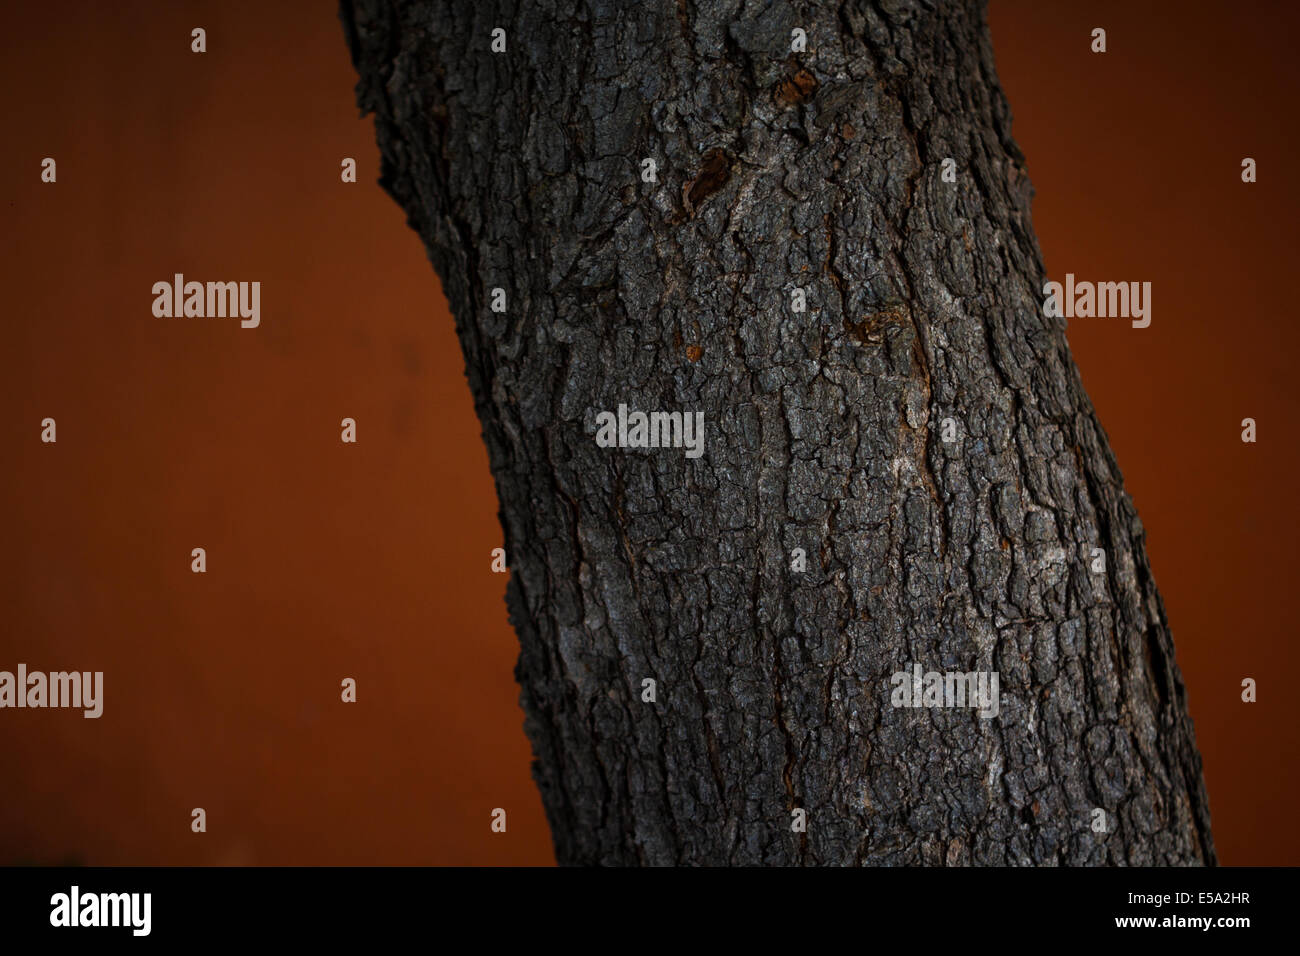 Neem tree Stock Photo